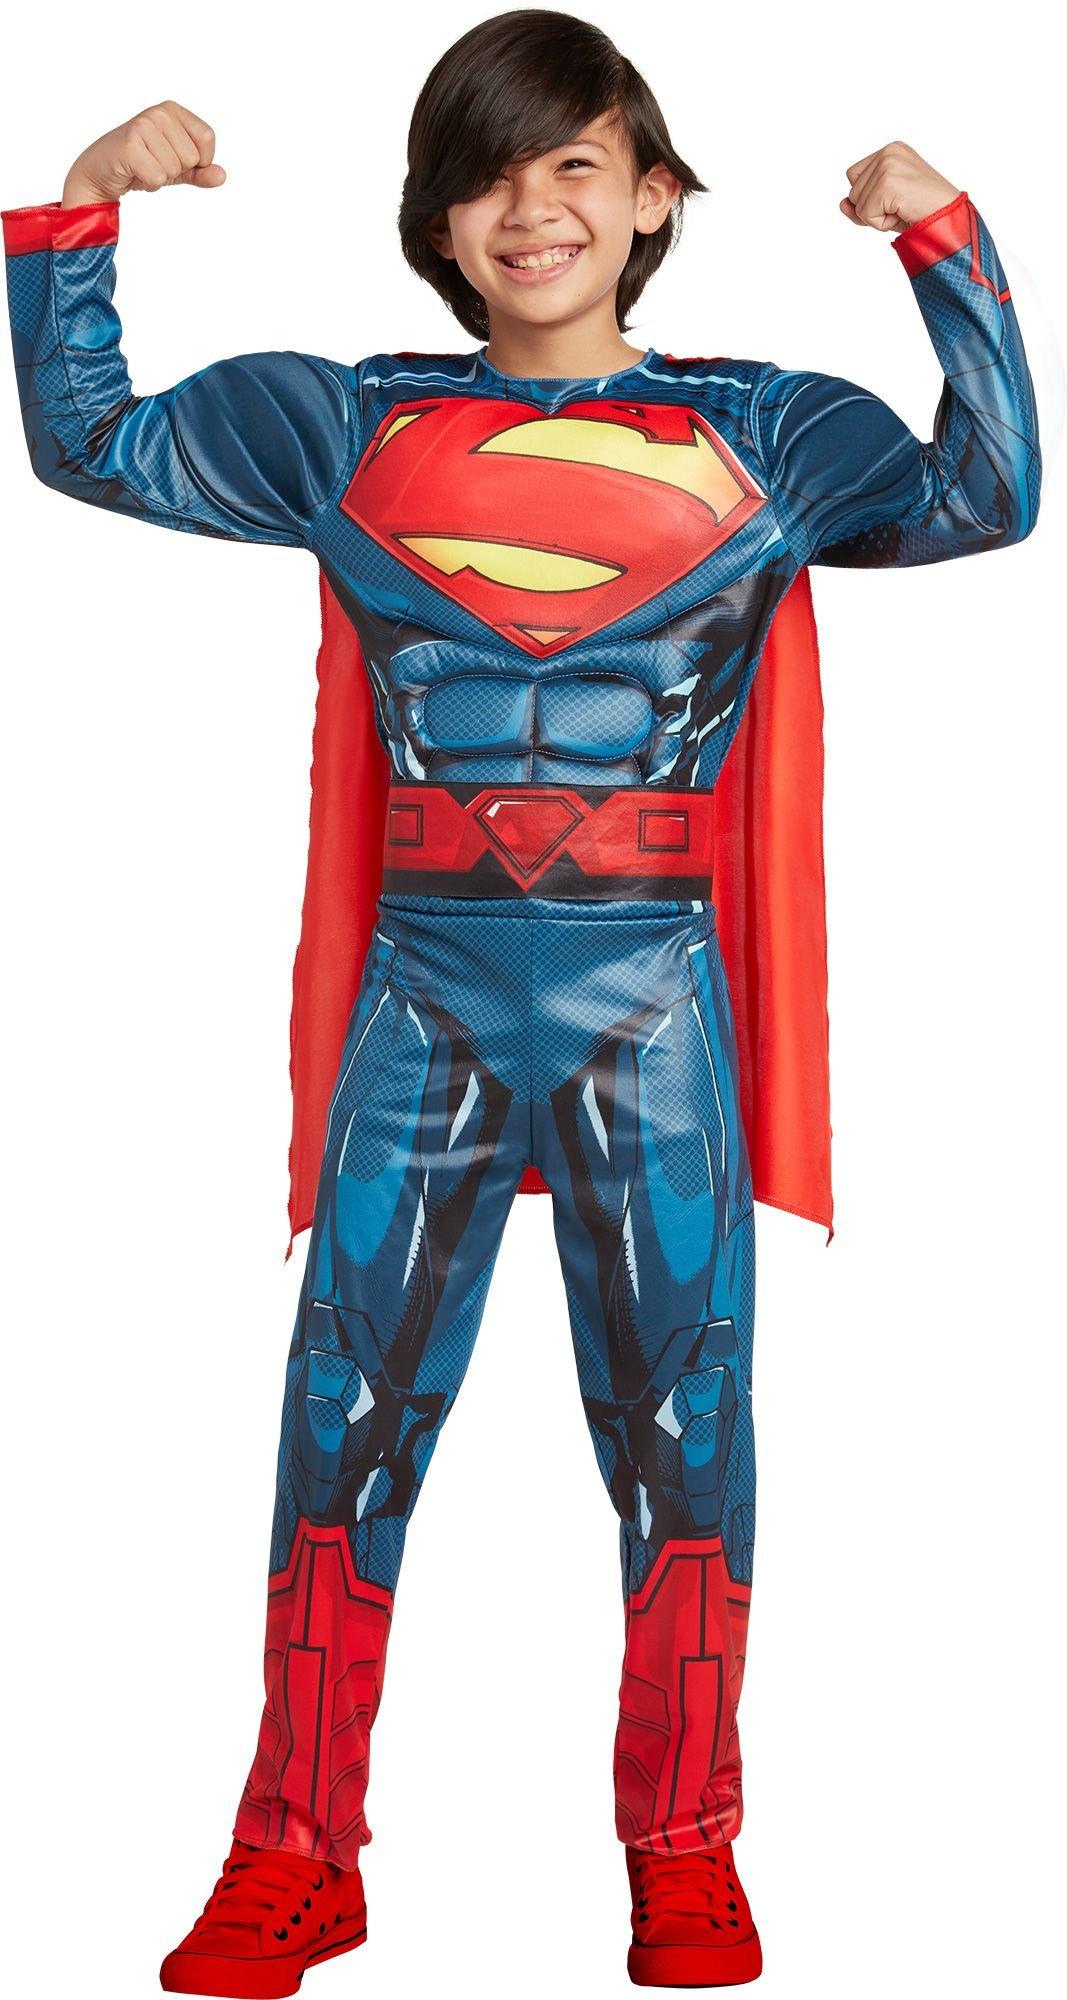 superman justice league